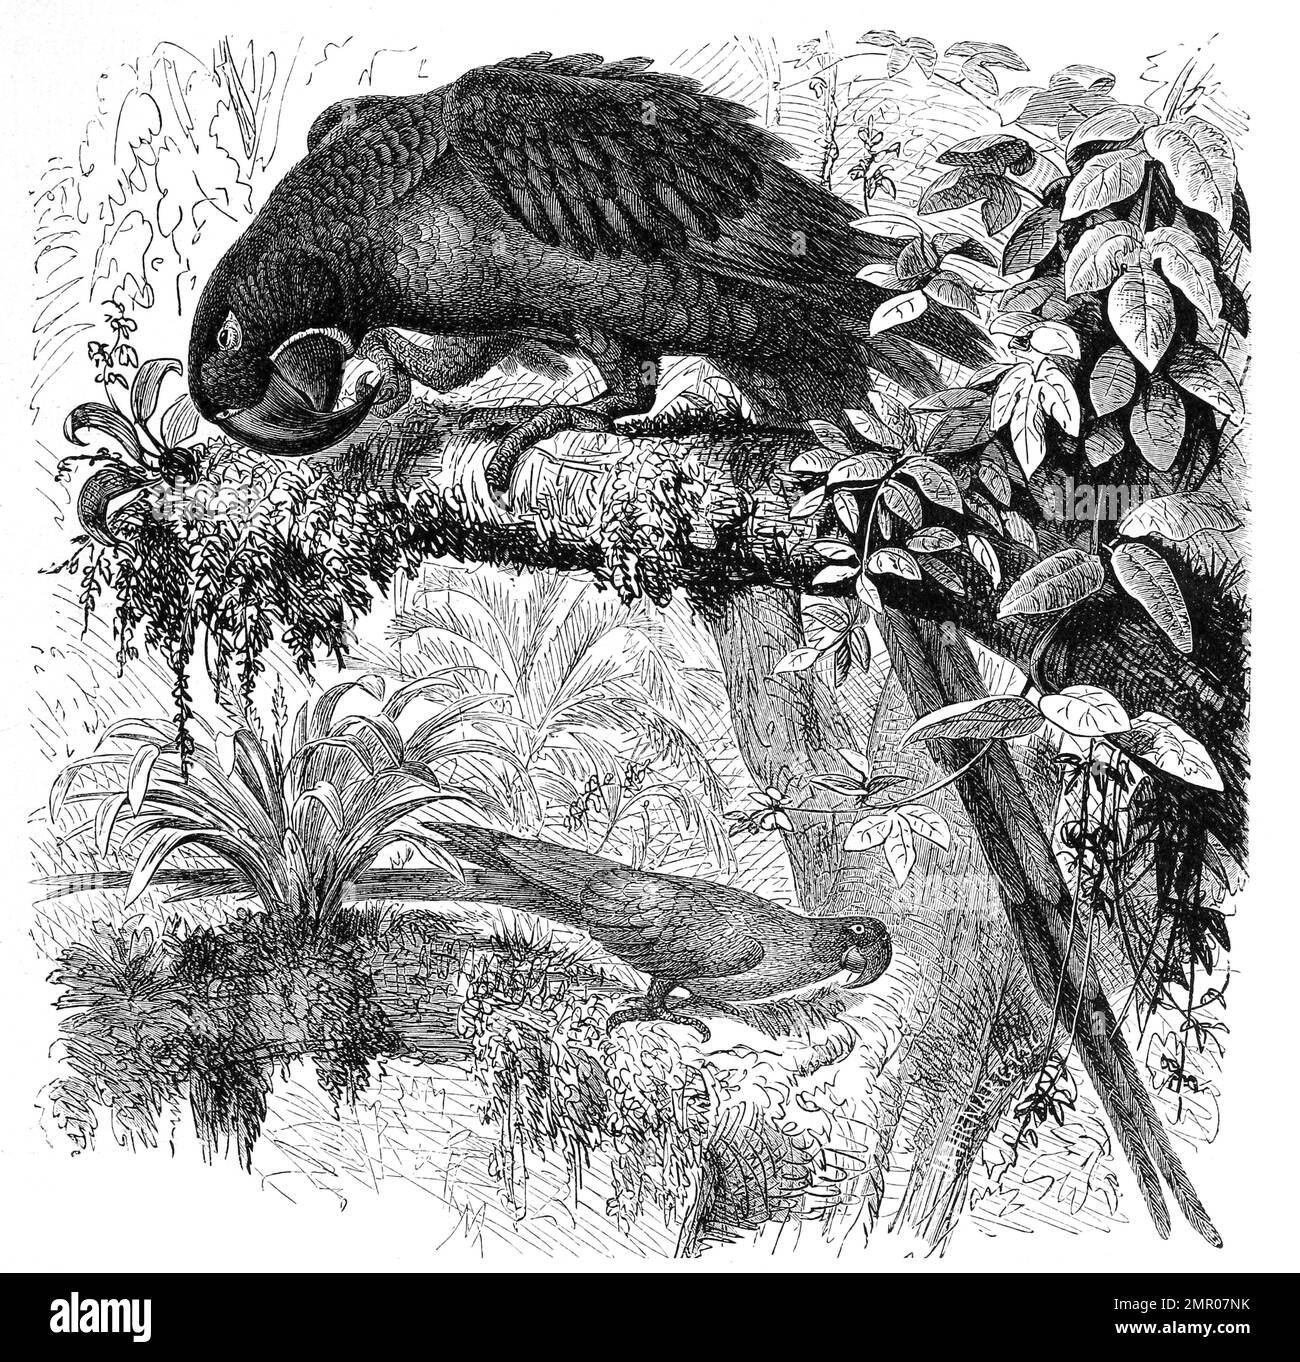 Vogel, Hyacintharara, Sittace hyacinthina, Historisch, ristorante digitale Reproduktion von einer Vorlage aus dem 18. Jahrhundert Foto Stock